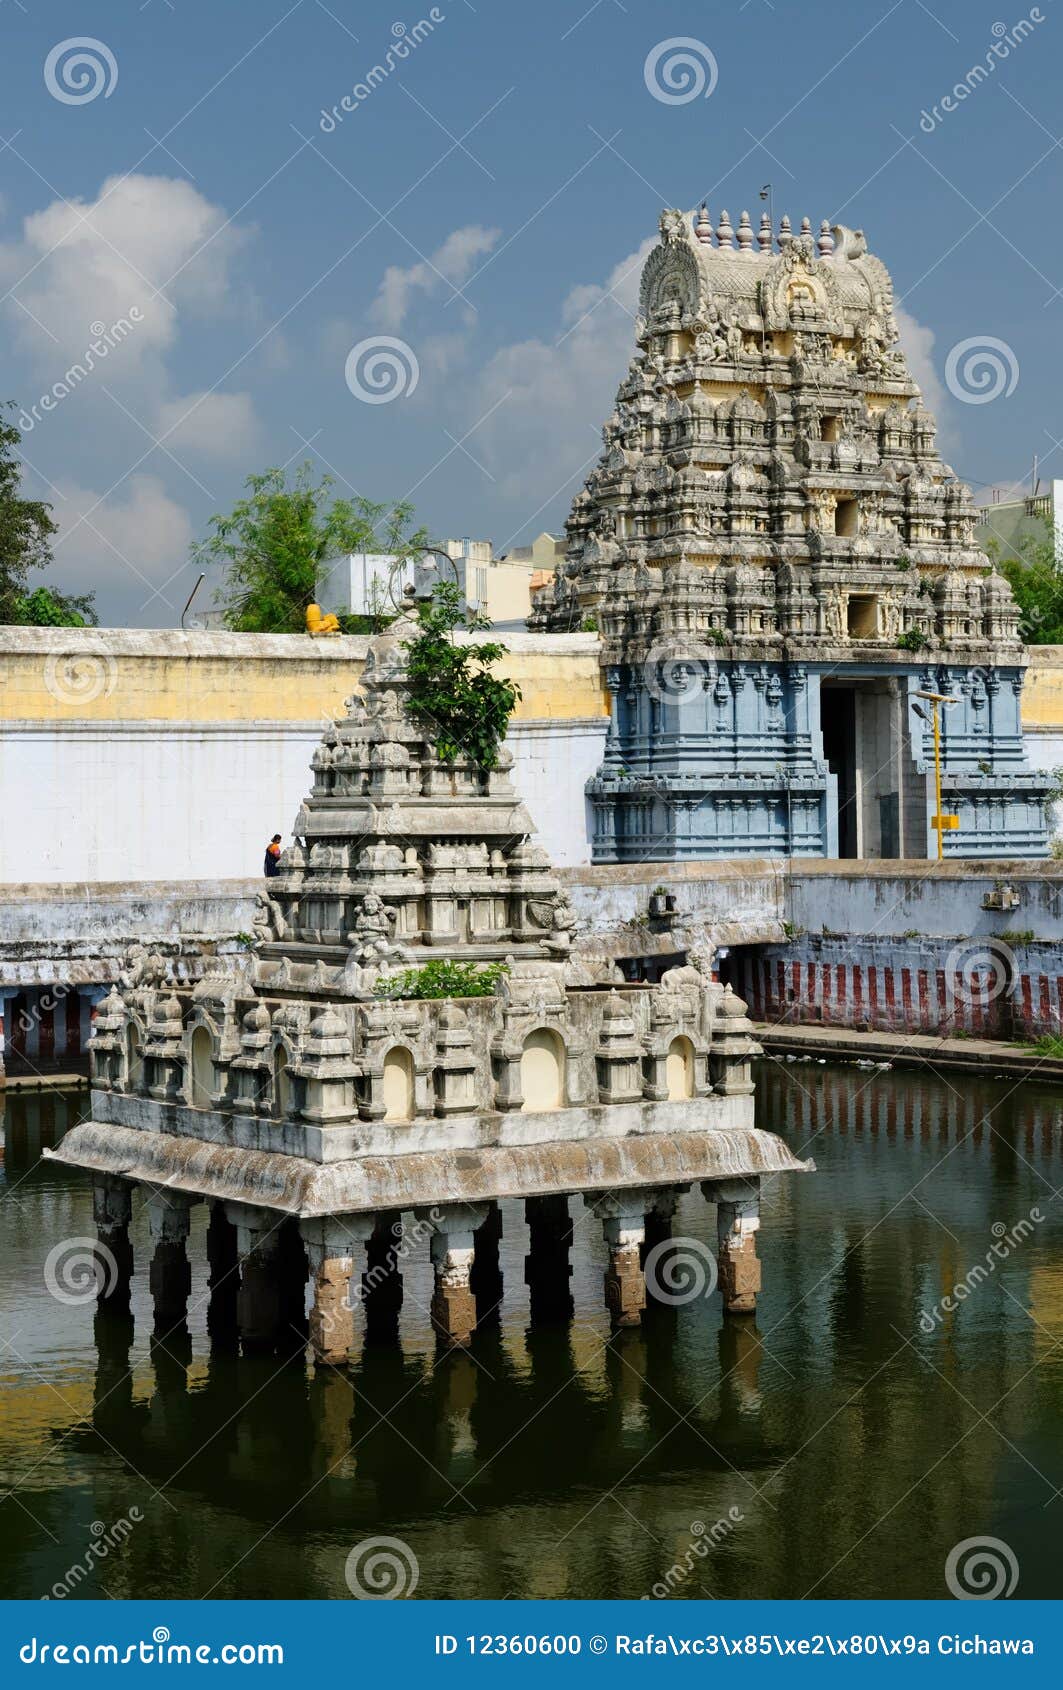 india, tamil nadu - kamakshiamman temple